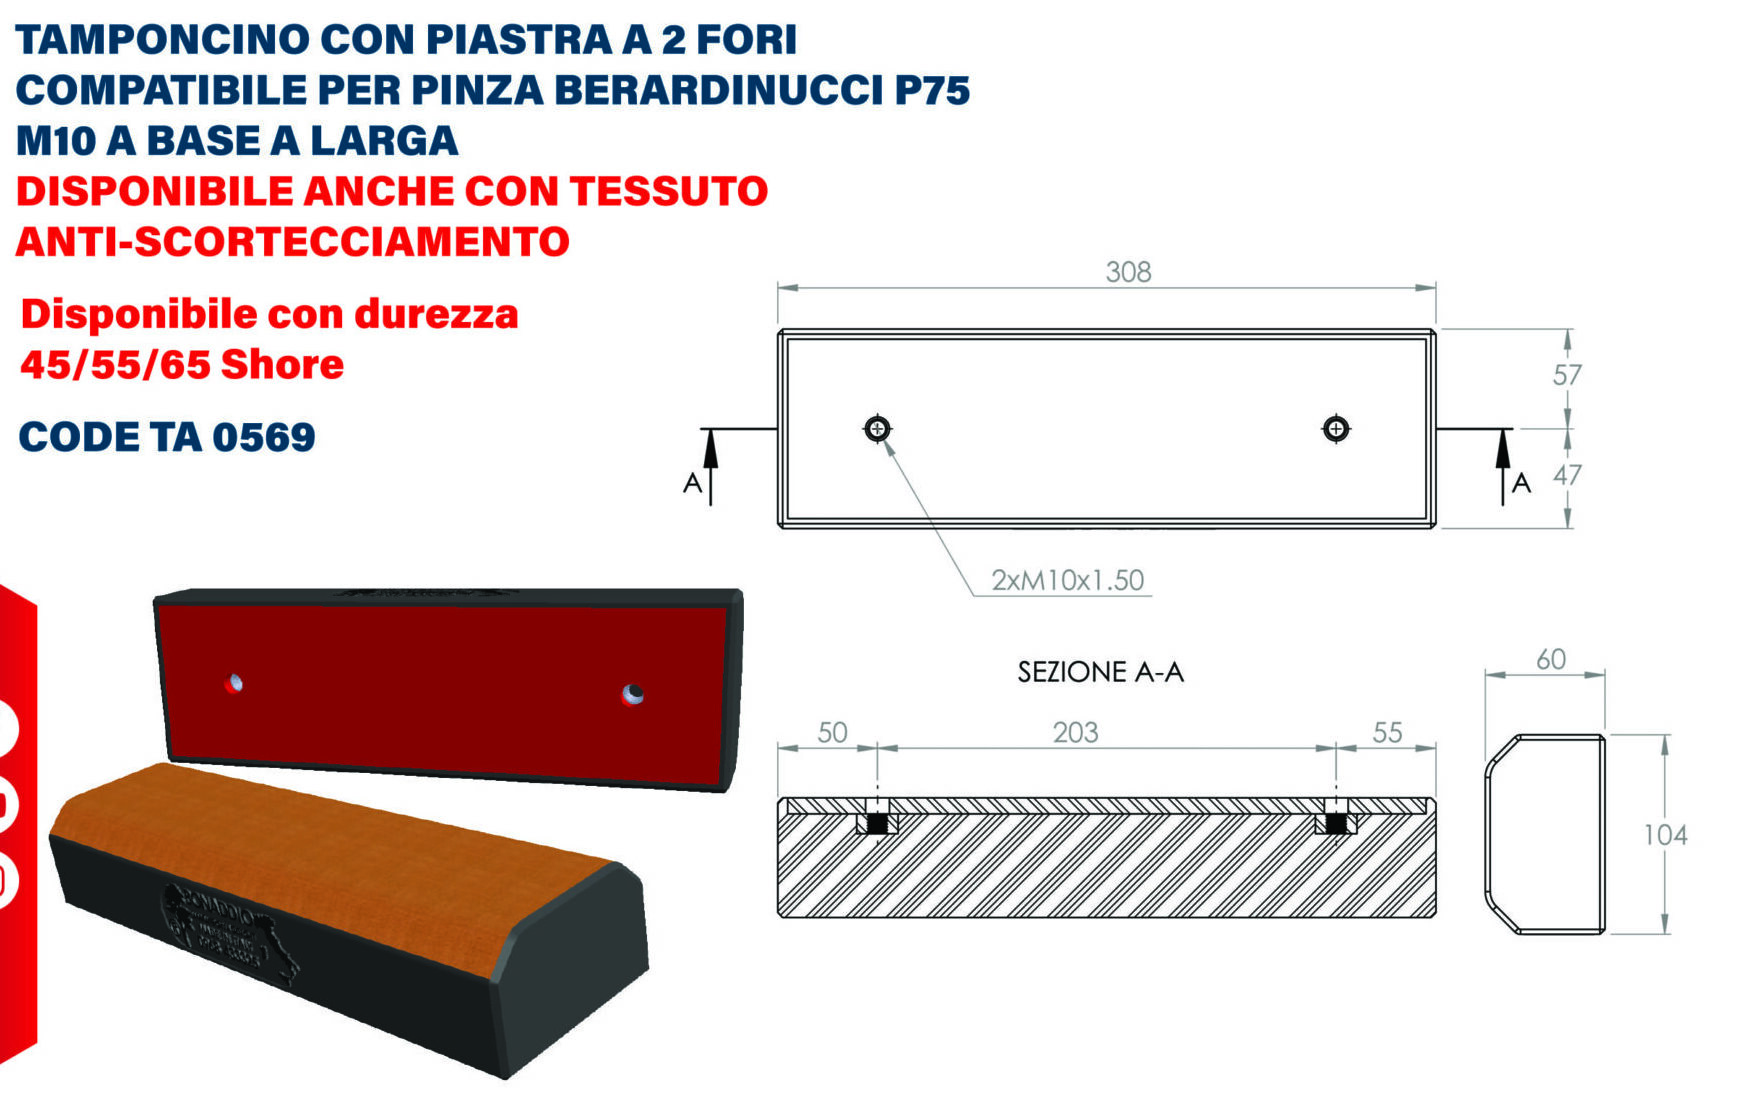 Tamponcino con piastra a 2 fori compatibile per pinza Berardinucci P75 M10 a base larga